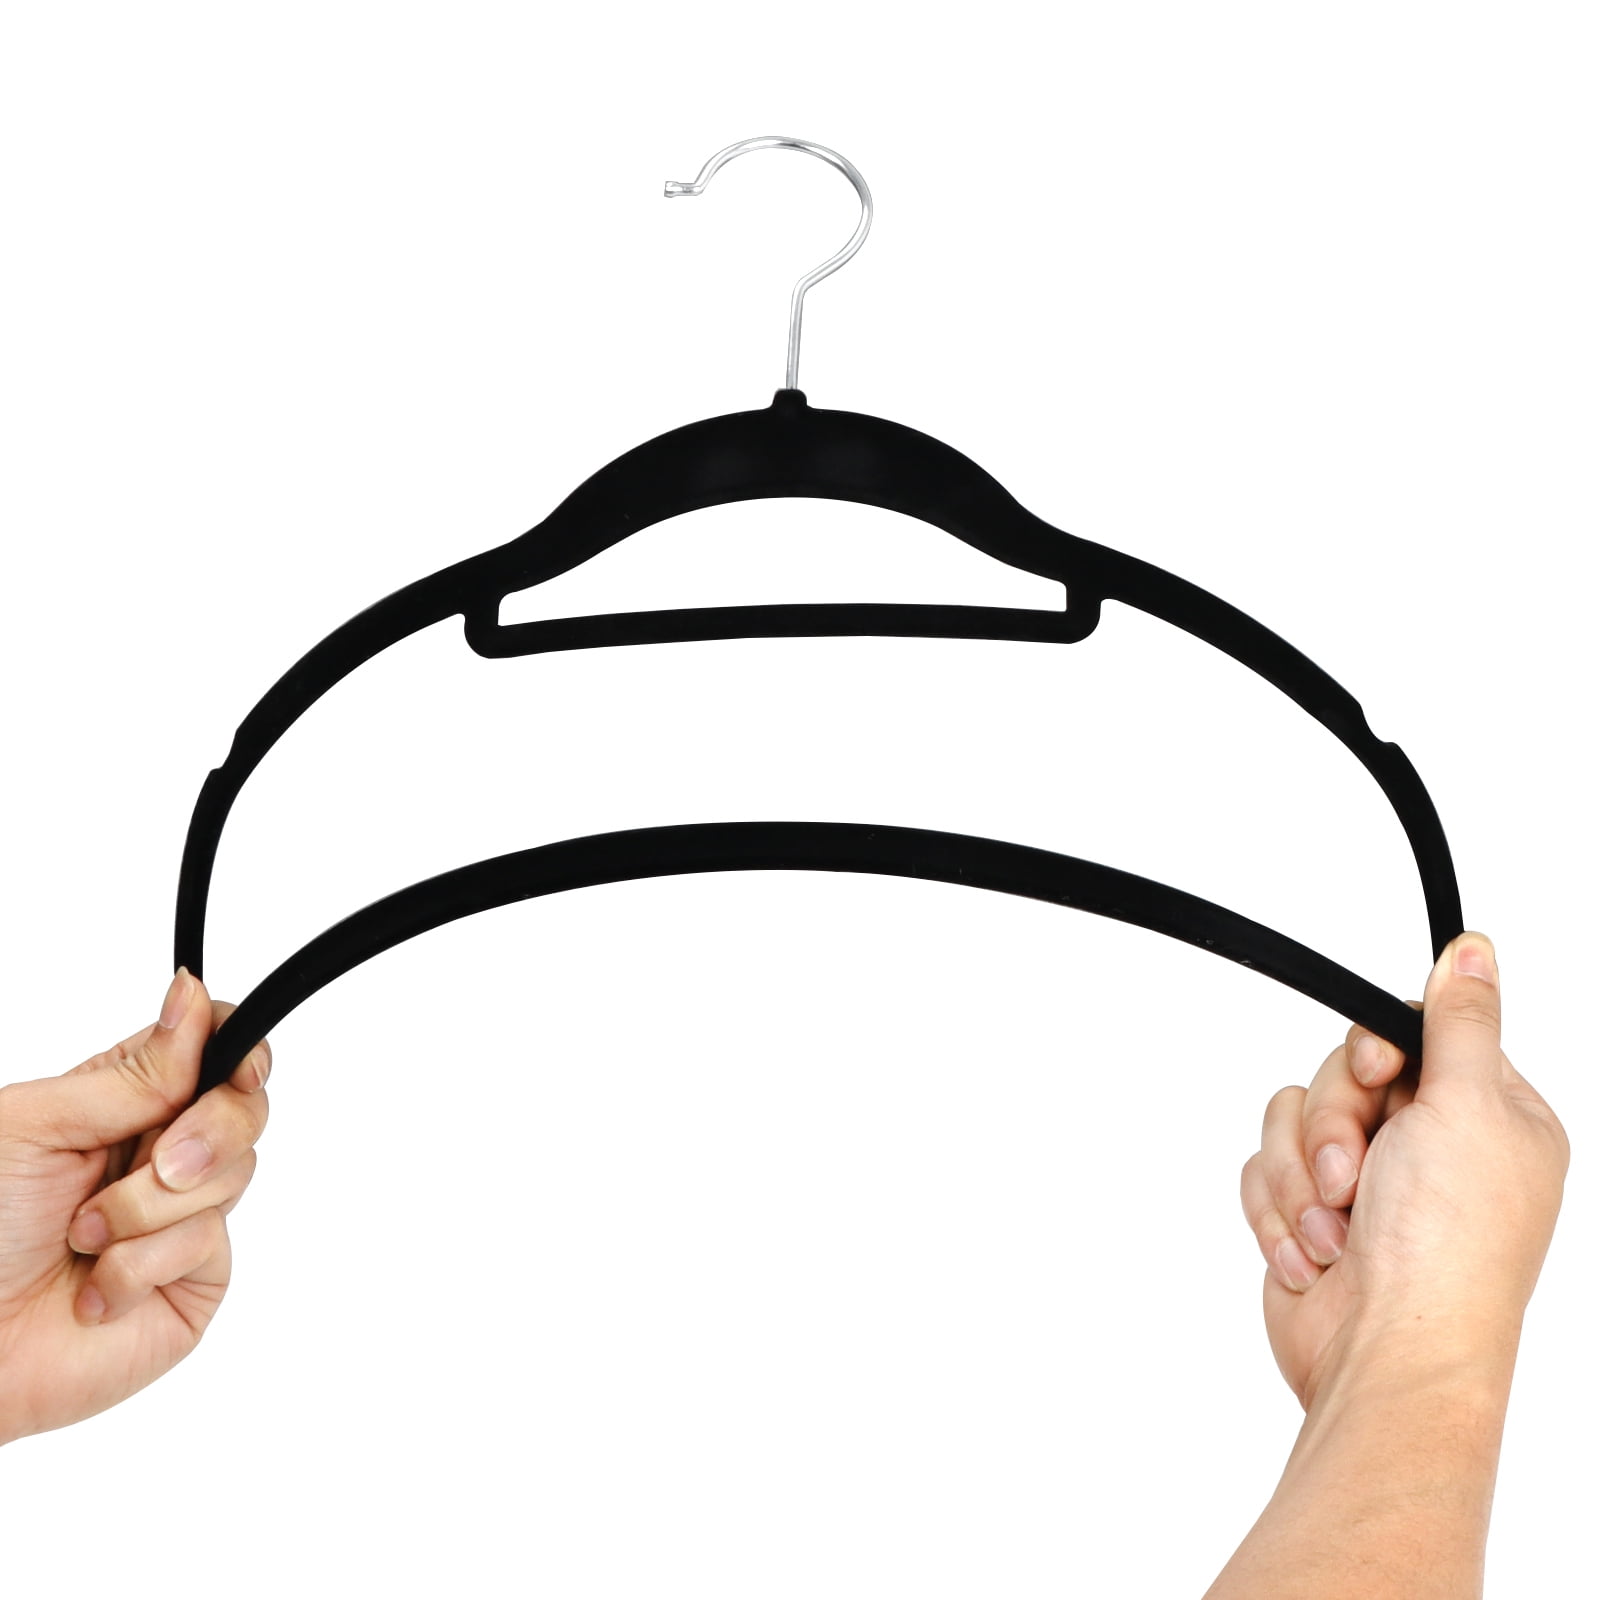 Dropship Black Velvet Hangers 17.5. Pack Of 150 Thin Hangers Non Slip  Velvet For Any Clothing Style. Sturdy & Heavy-Duty Velvet Hanger 17.5 Inch  Size. Portable Adult Velvet Clothes Hangers to Sell